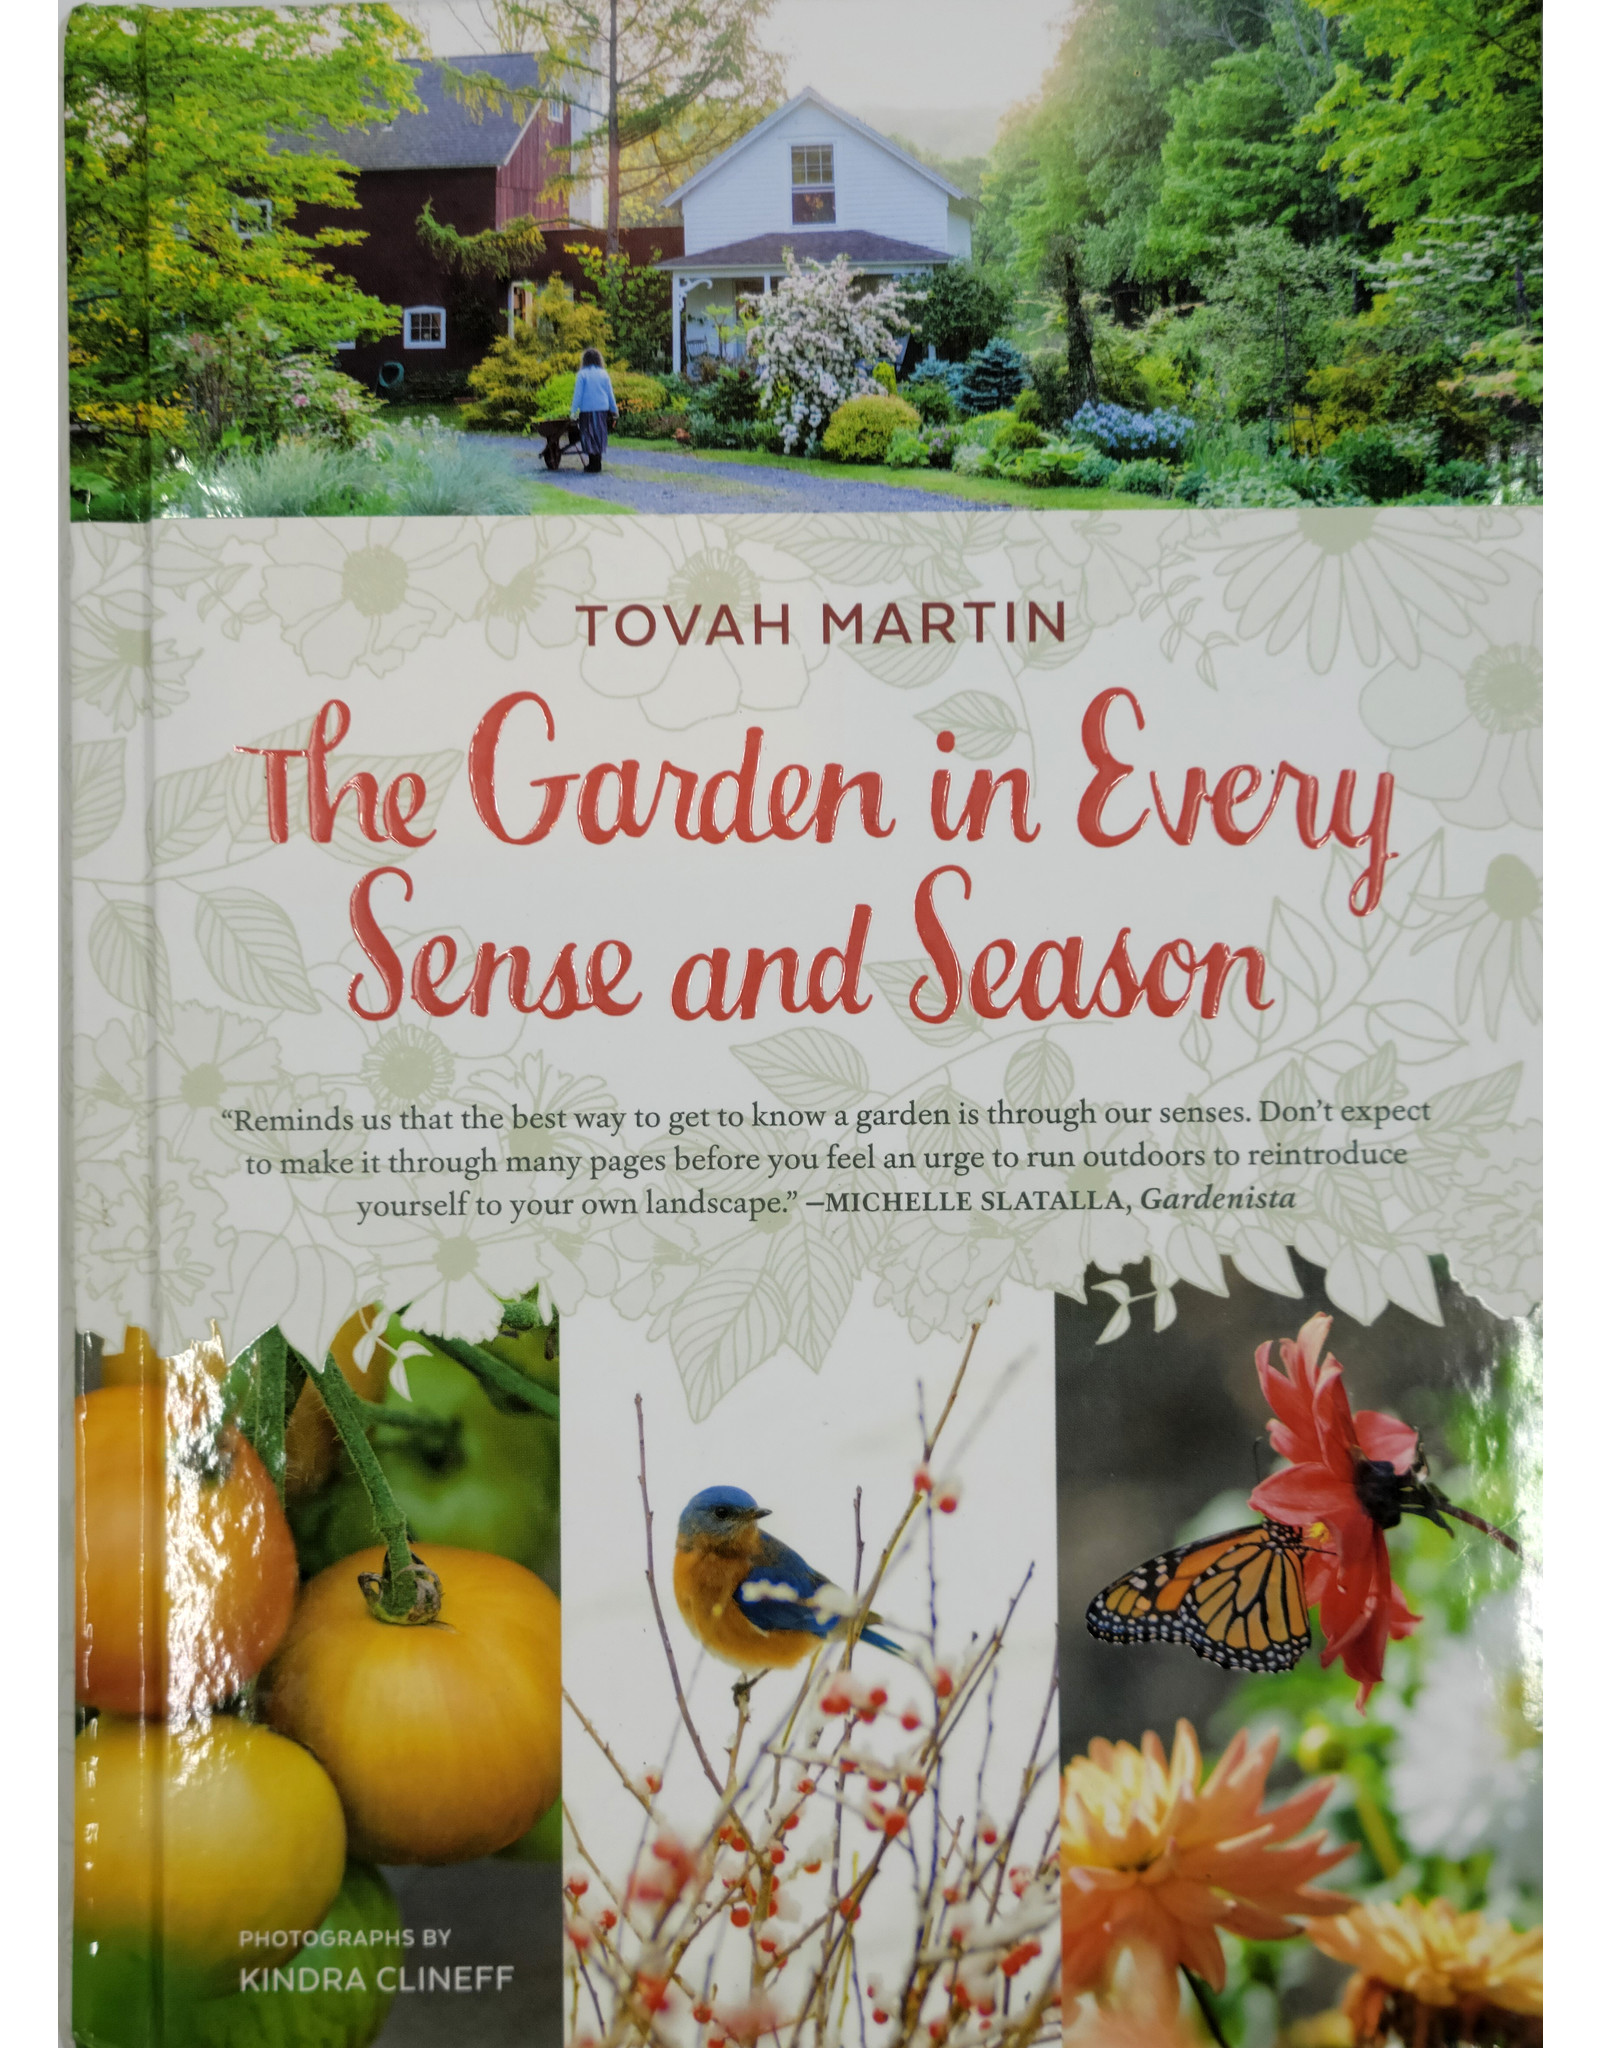 The Garden in Every Sense and Season